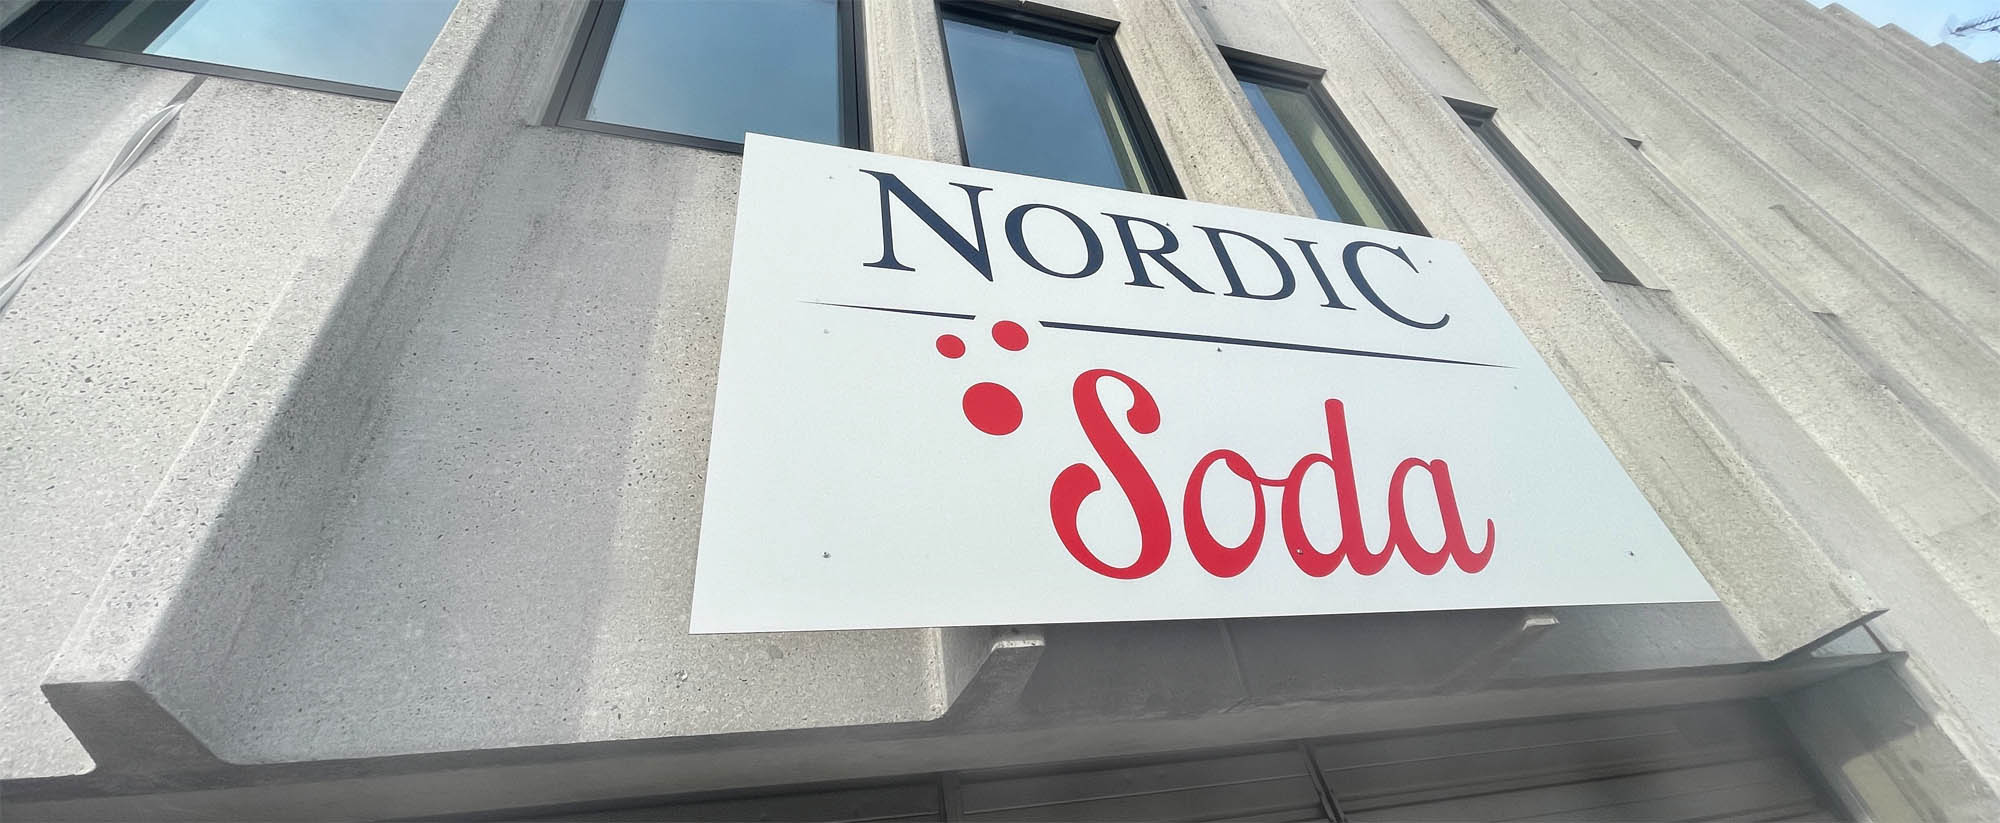 Nordic Soda | Facade